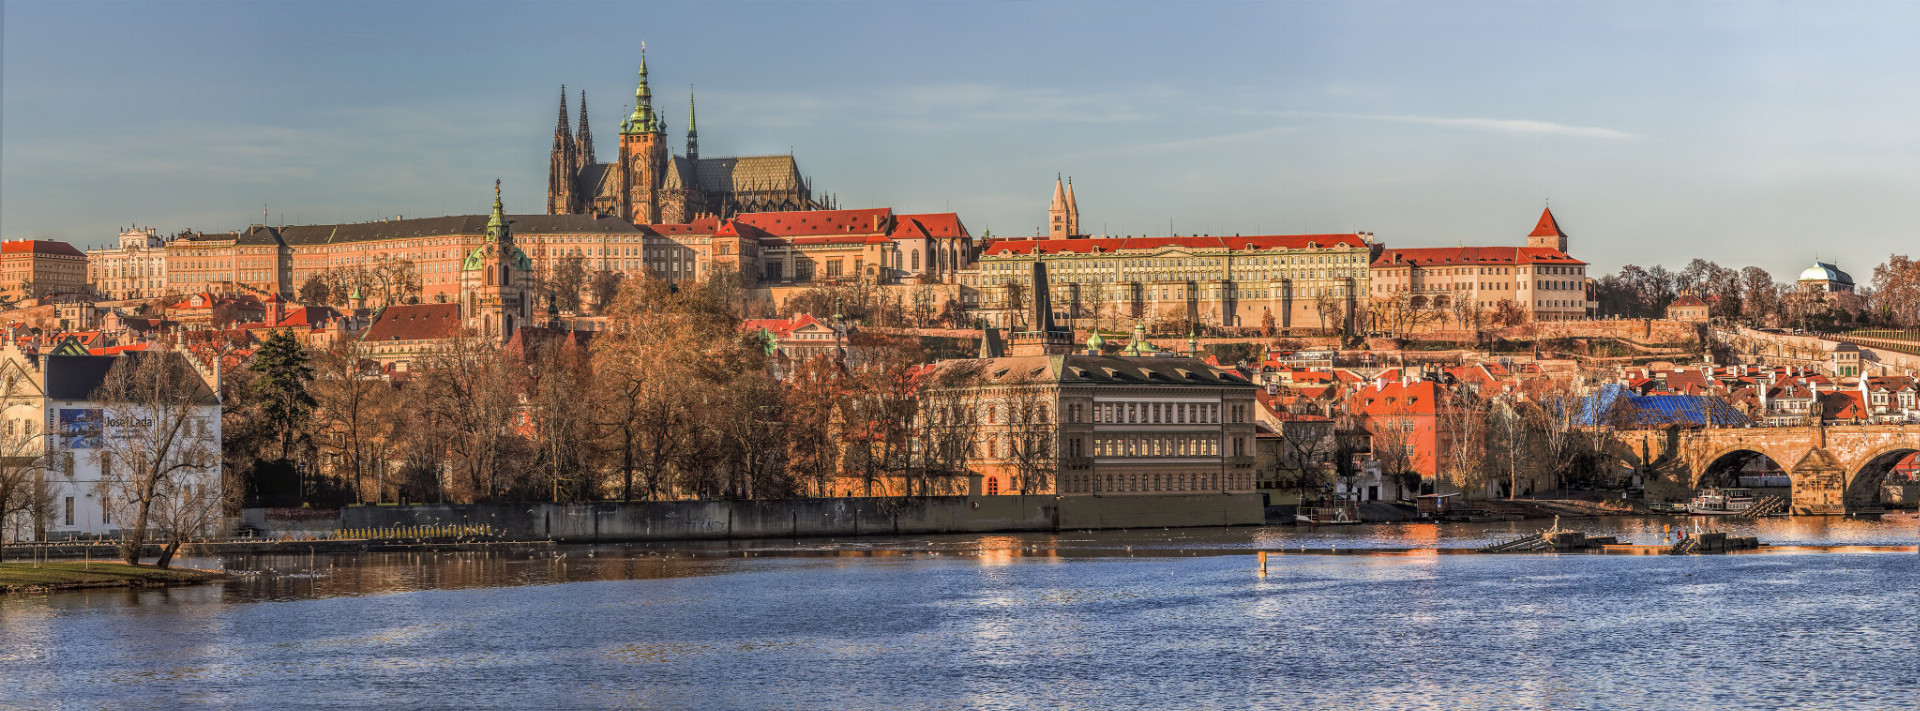 Na jeseň je Praha obzvlášť úchvatná. V tomto období klesá počet turistov. Začiatkom októbra má zvláštnu jesennú atmosféru. 

